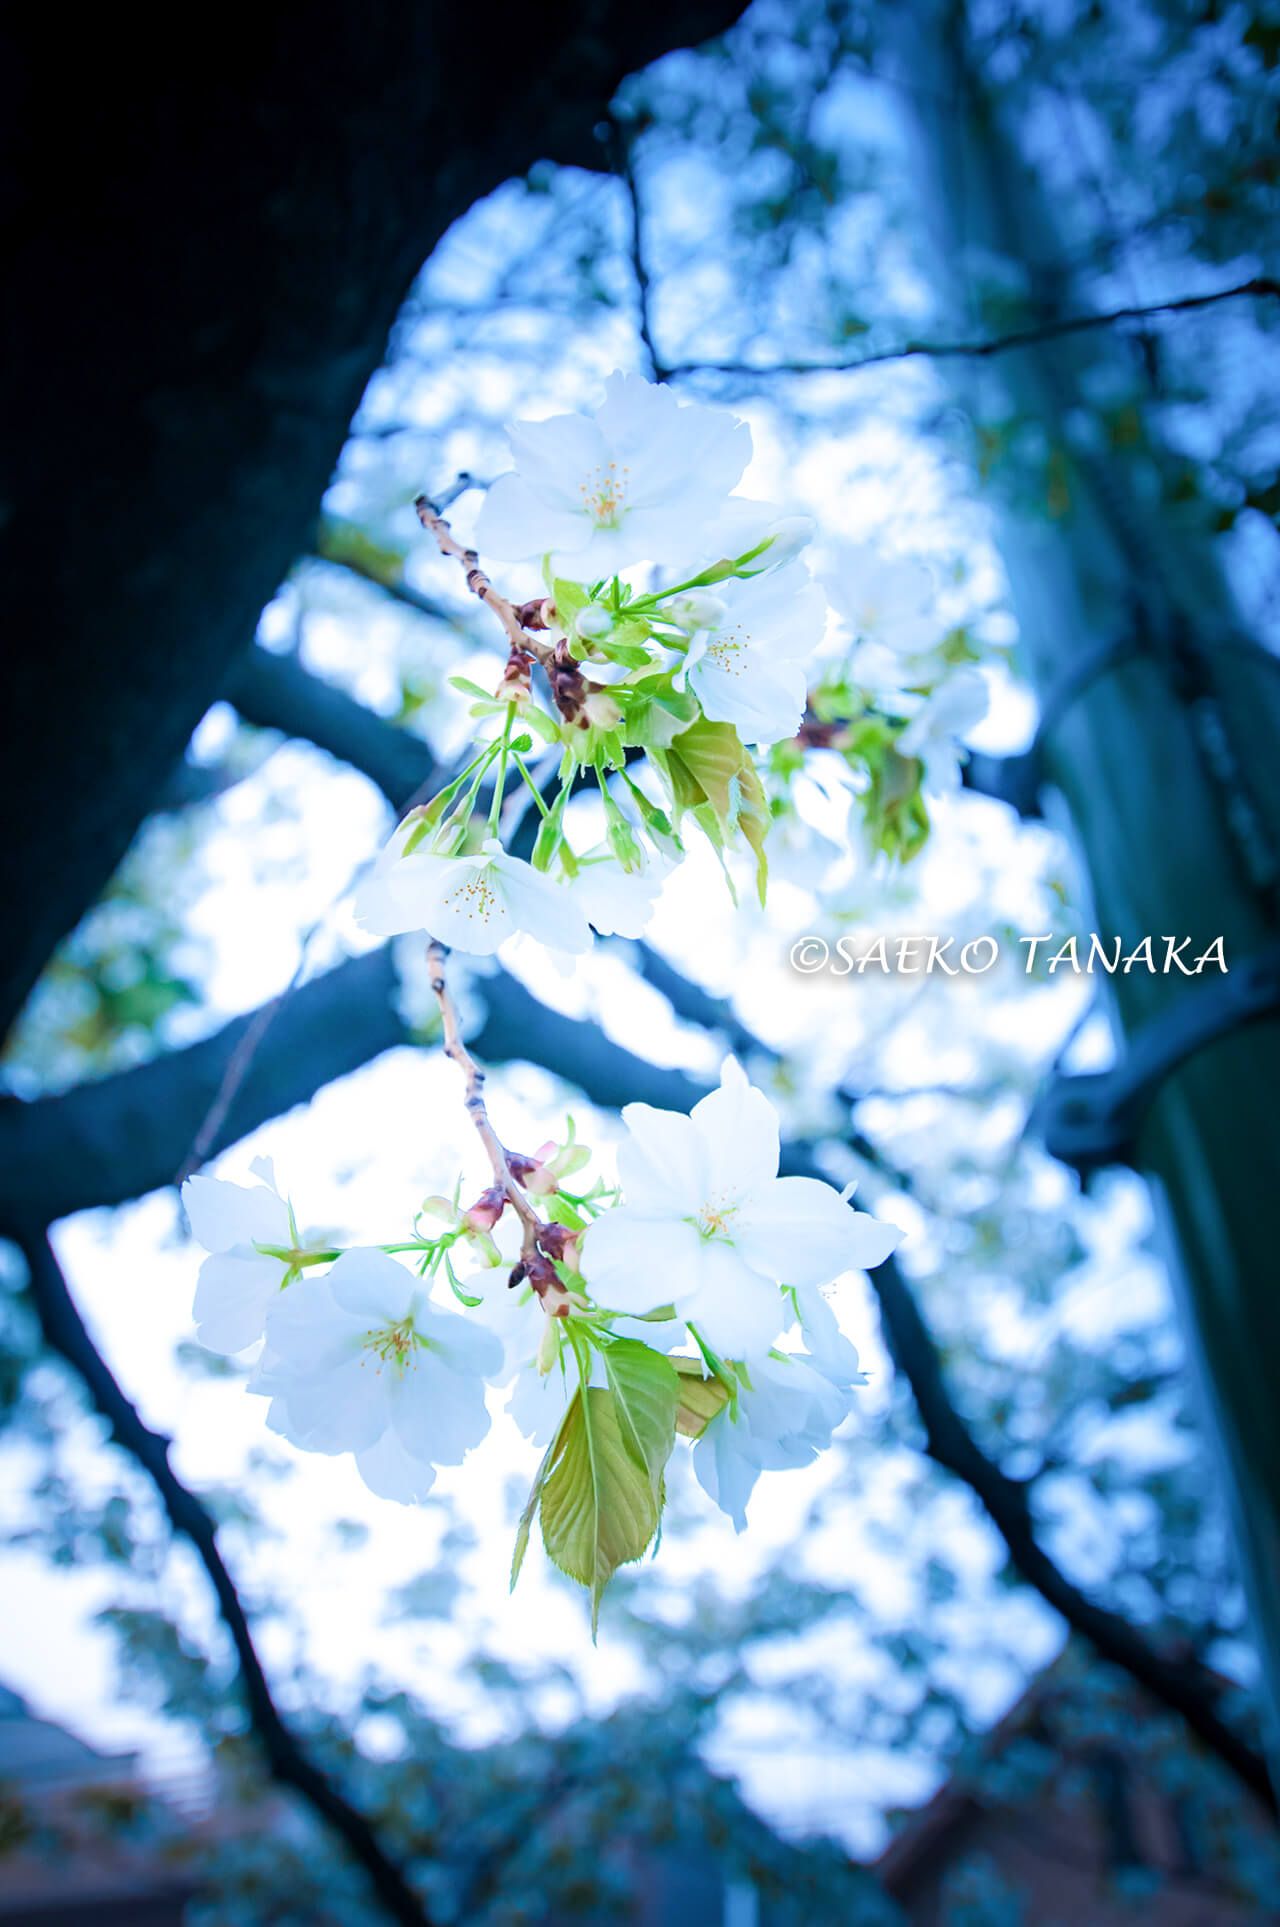 桜満開の「馬込文士村」の“馬込の桜並木”